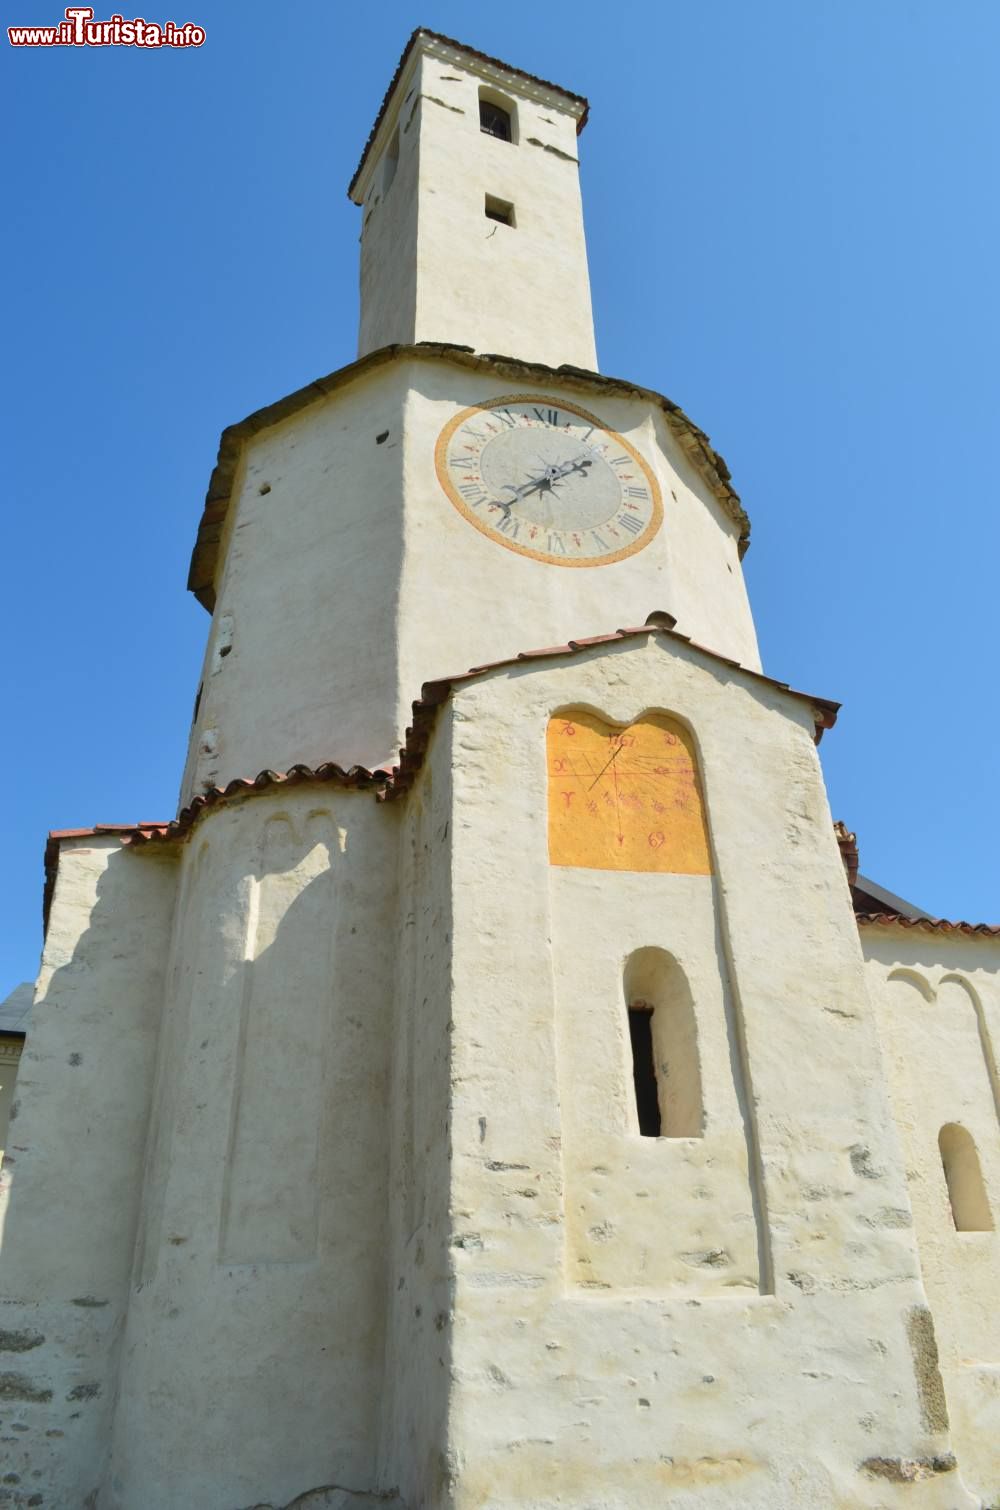 Immagine La Torre campanaria del complesso del Battistero e Parrocchiale di San Ponso Canavese nel Piemonte